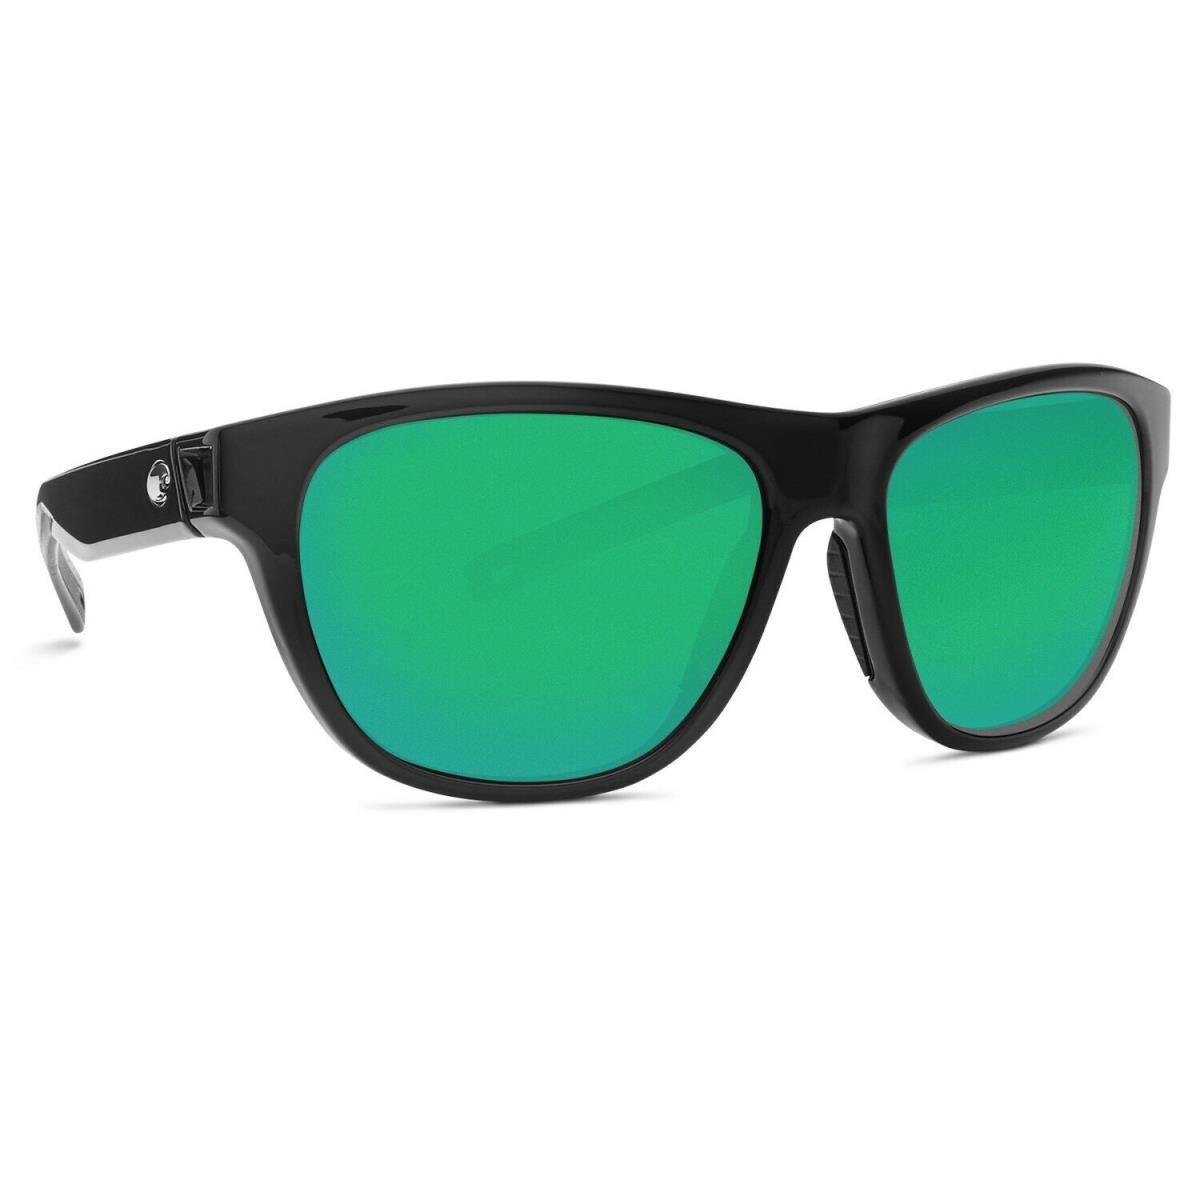 Costa Del Mar Bayside Women`s Sunglasses - Polarized ShinyBlack/GreenMirror